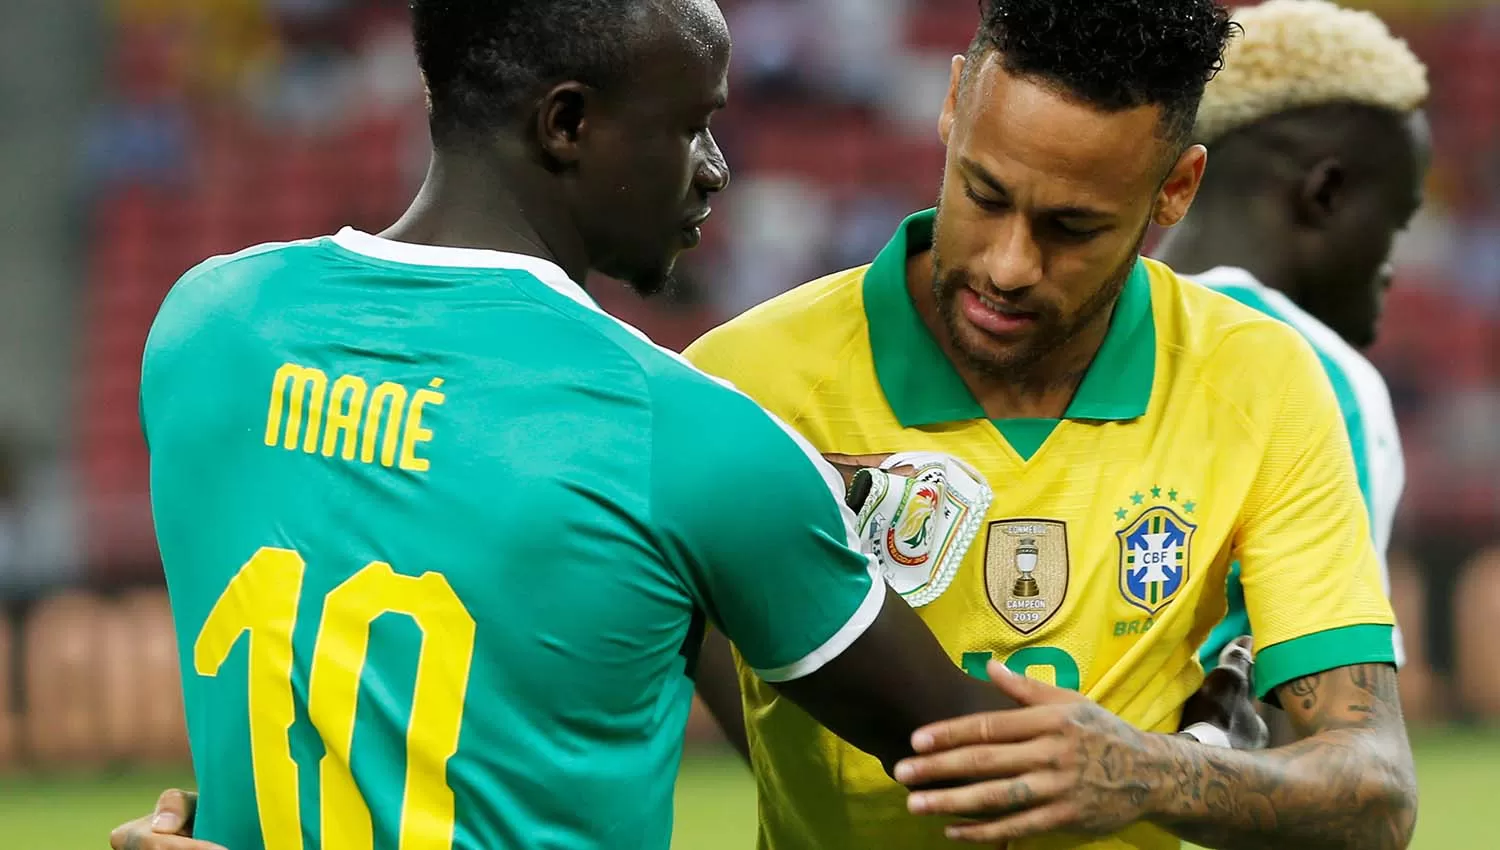 El saludo previo al partido entre Mané y Neymar. El delentaro del Liverpool fue el mejor de la cancha. (Reuters)